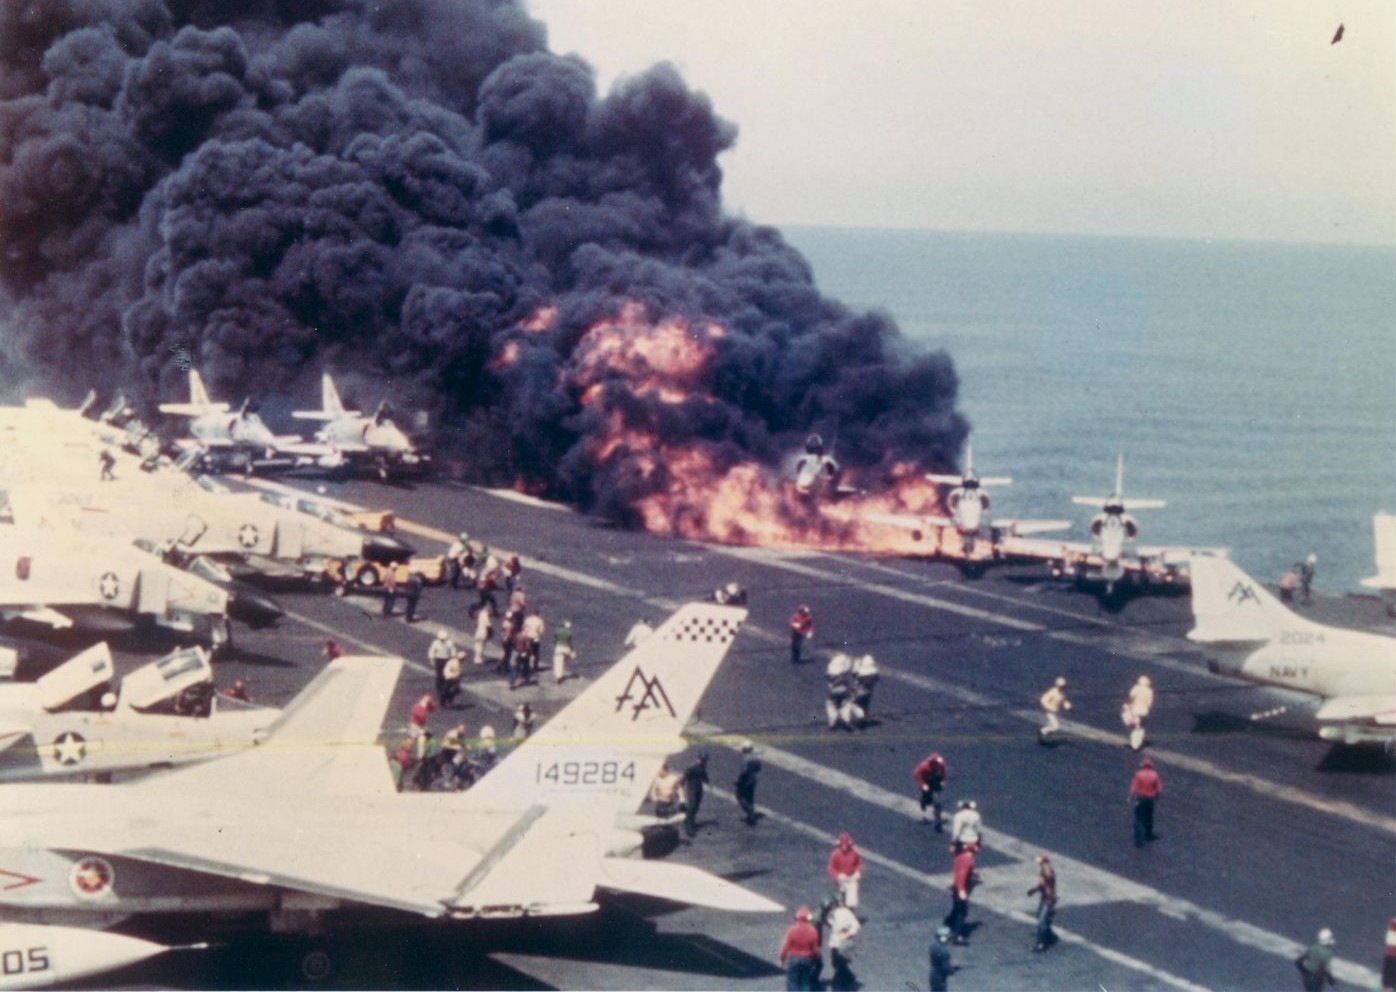 cv-59 uss forrestal aircraft carrier us navy zuni rocket fire damage 09